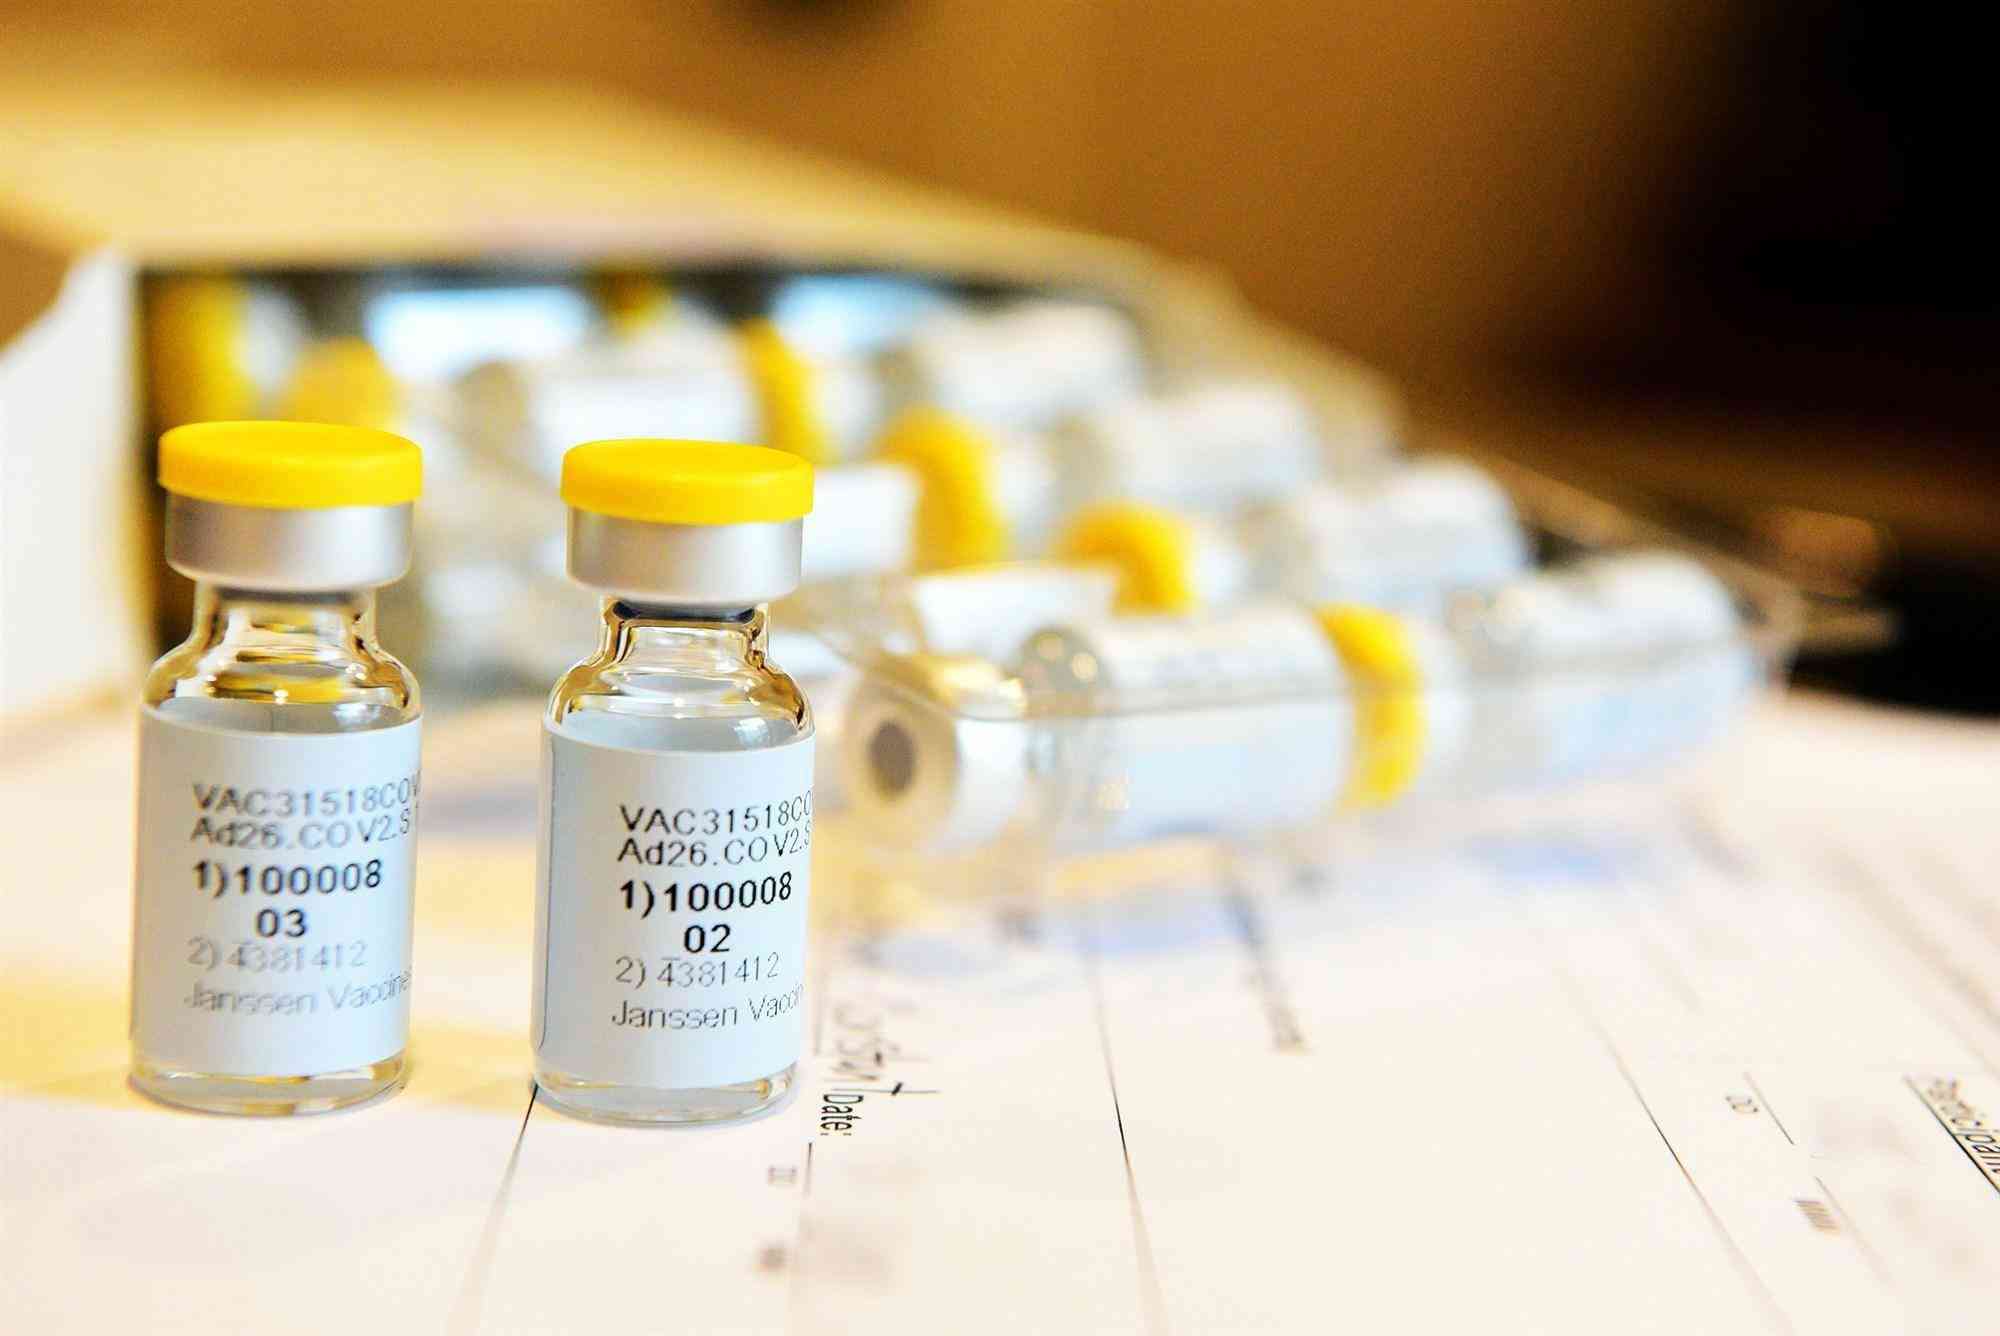 没有打完麻风疫苗可补种麻风腮疫苗